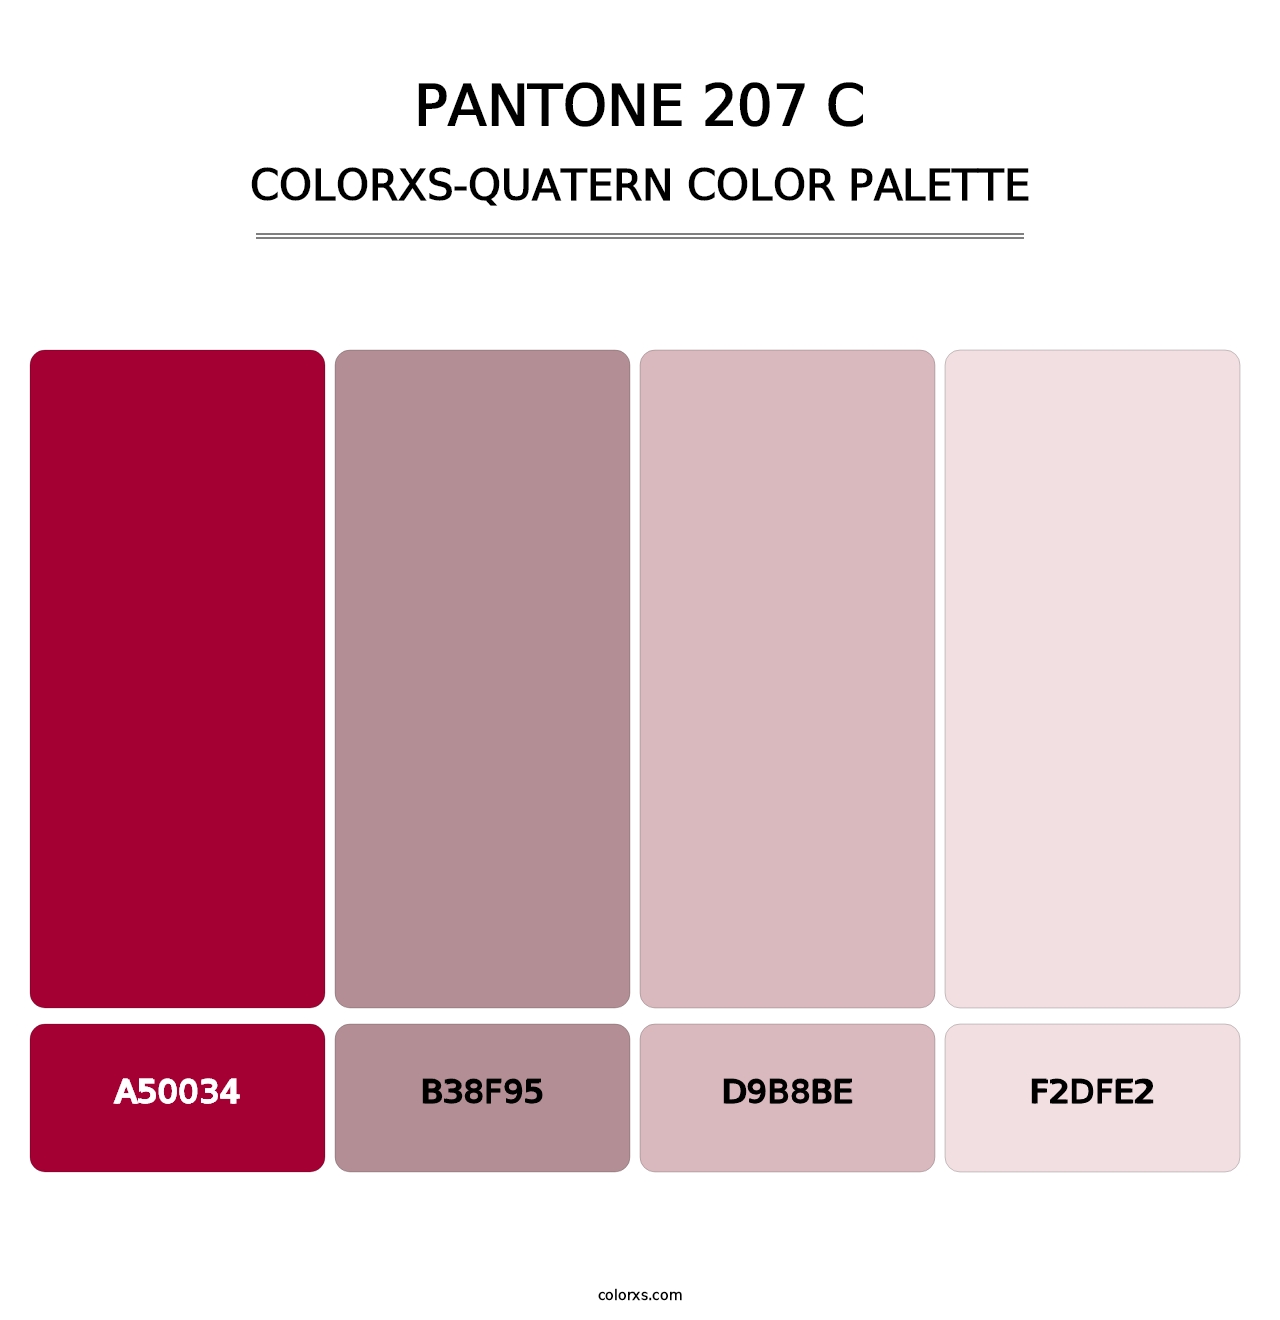 PANTONE 207 C - Colorxs Quatern Palette